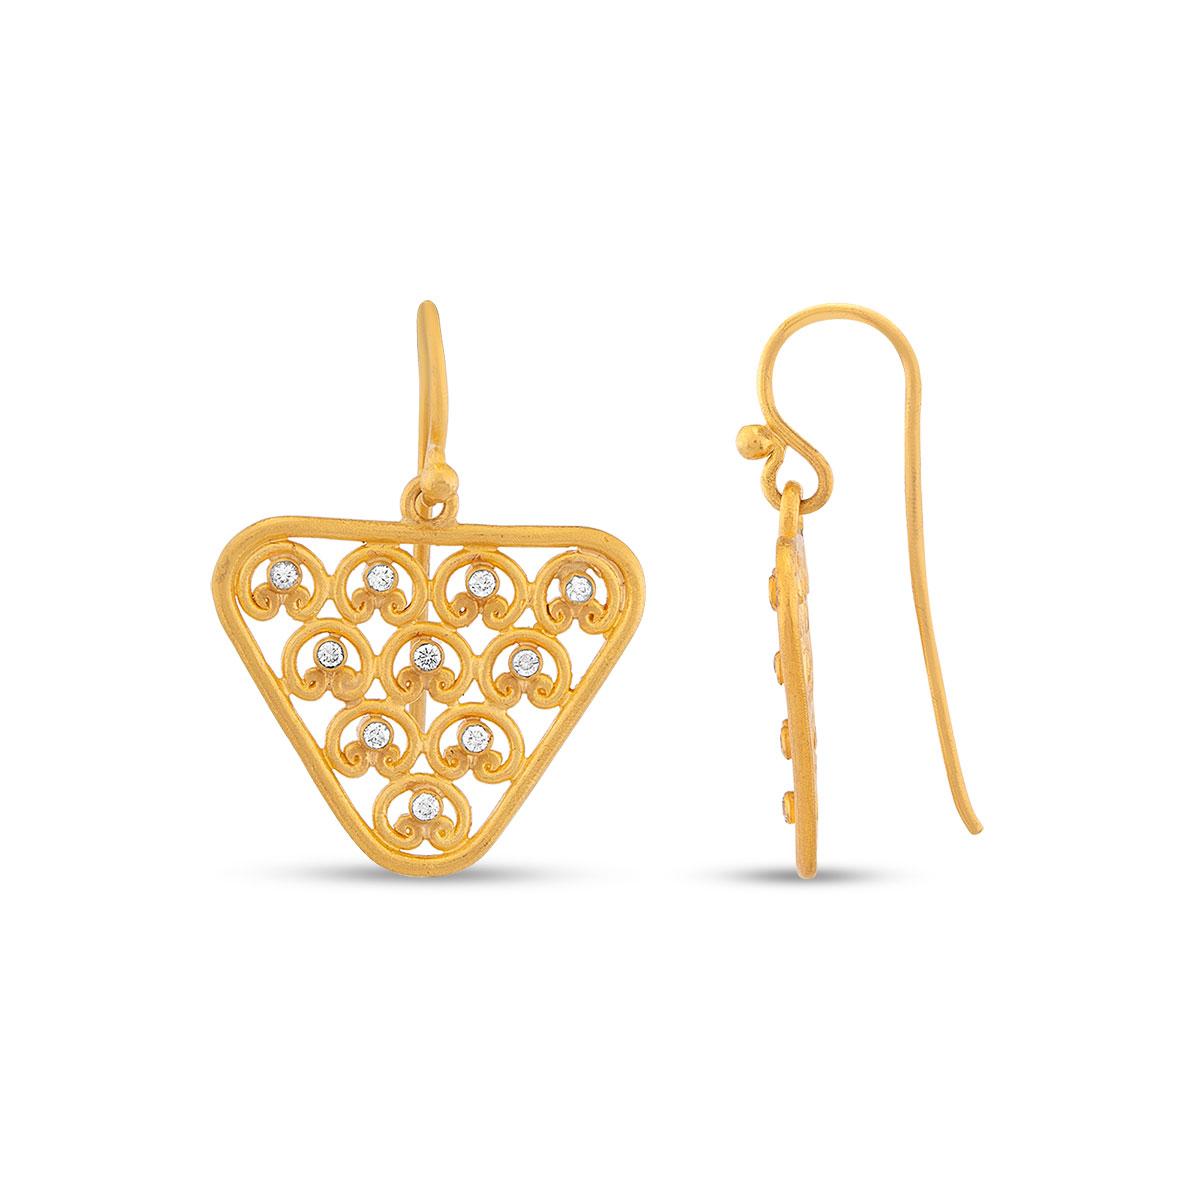 Nabla Earrings with Diamonds